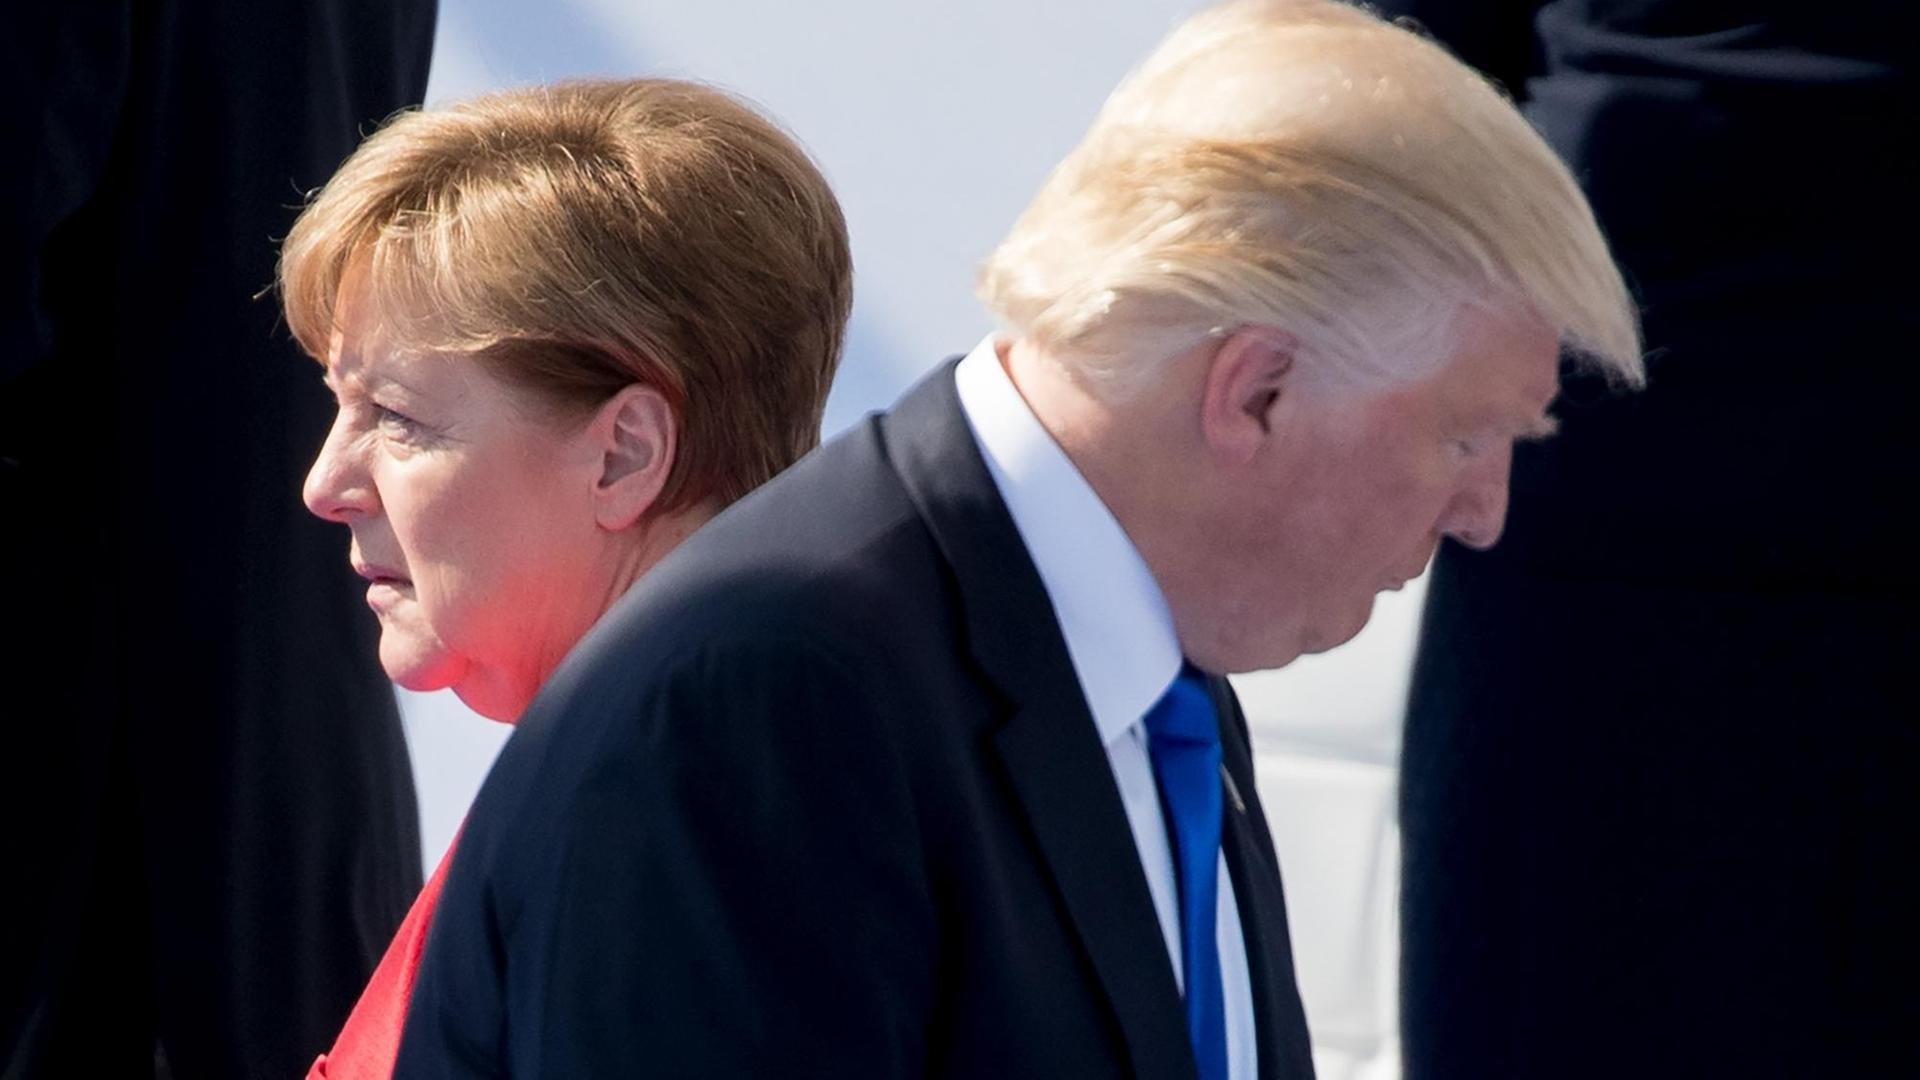 ARCHIV - Der Präsident der Vereinigten Staaten von Amerika, Donald Trump, und Bundeskanzlerin Angela Merkel (CDU) gehen am 25.05.2017 in Brüssel beim Nato-Gipfel bei der feierlichen Eröffnung des neuen Nato-Hauptquartiers an einander vorbei.